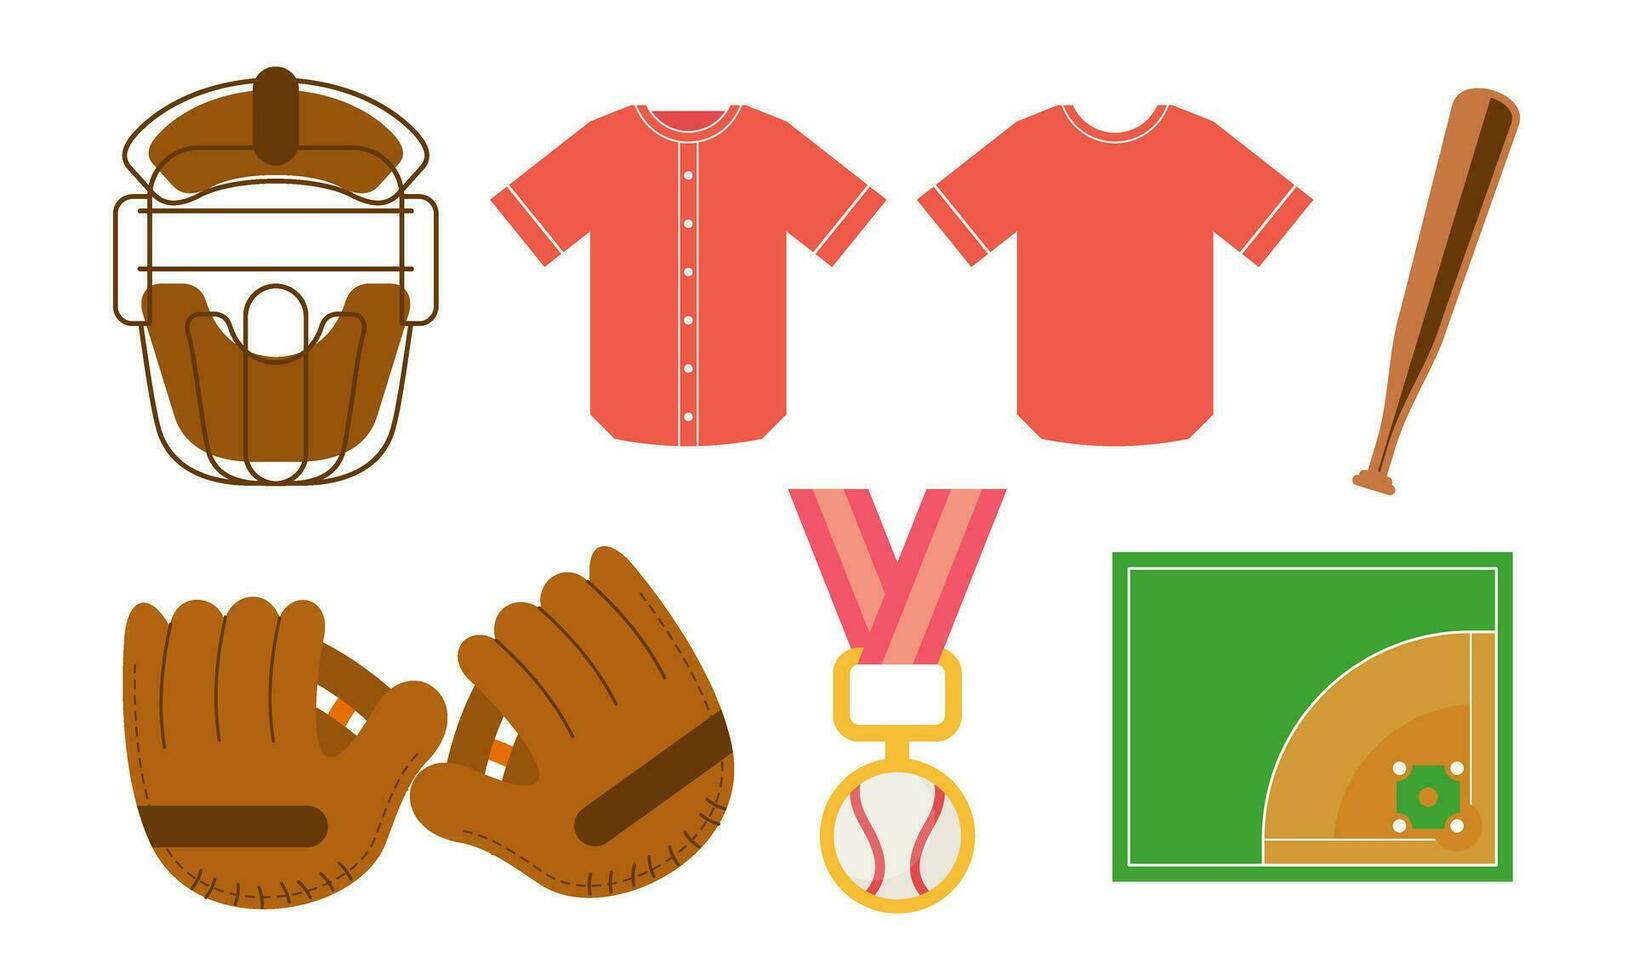 élément de base-ball capteurs tenue de sport et frappeurs base-ball pour compétition logo vecteur